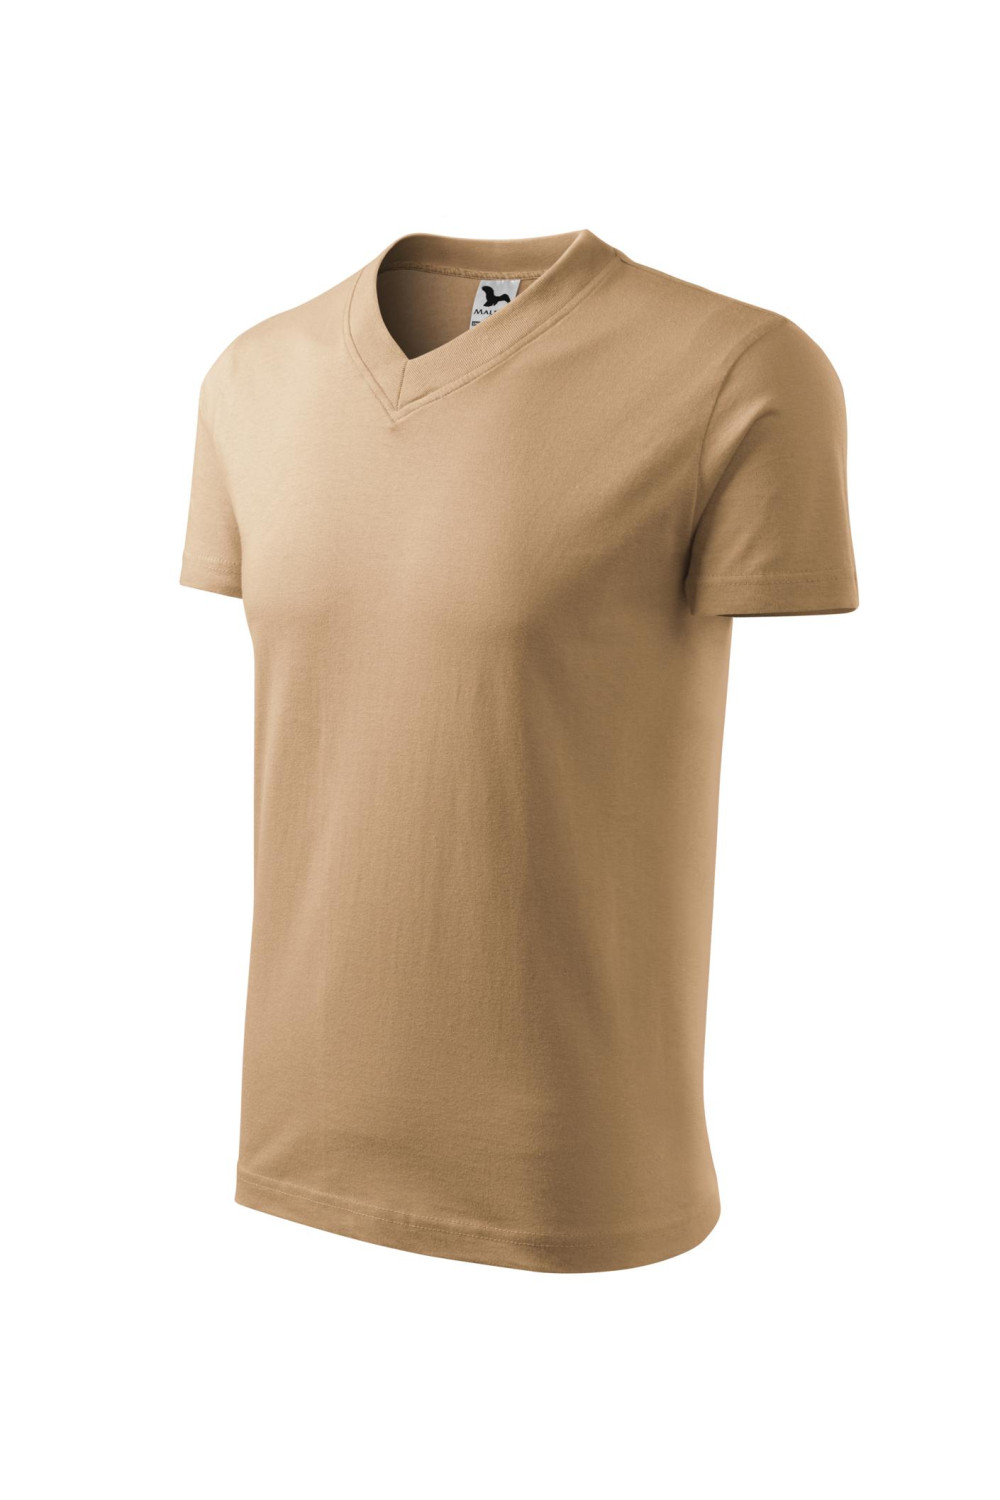 V-NECK 102 MALFINI Koszulka unisex 100% bawełna t-shirt piaskowy